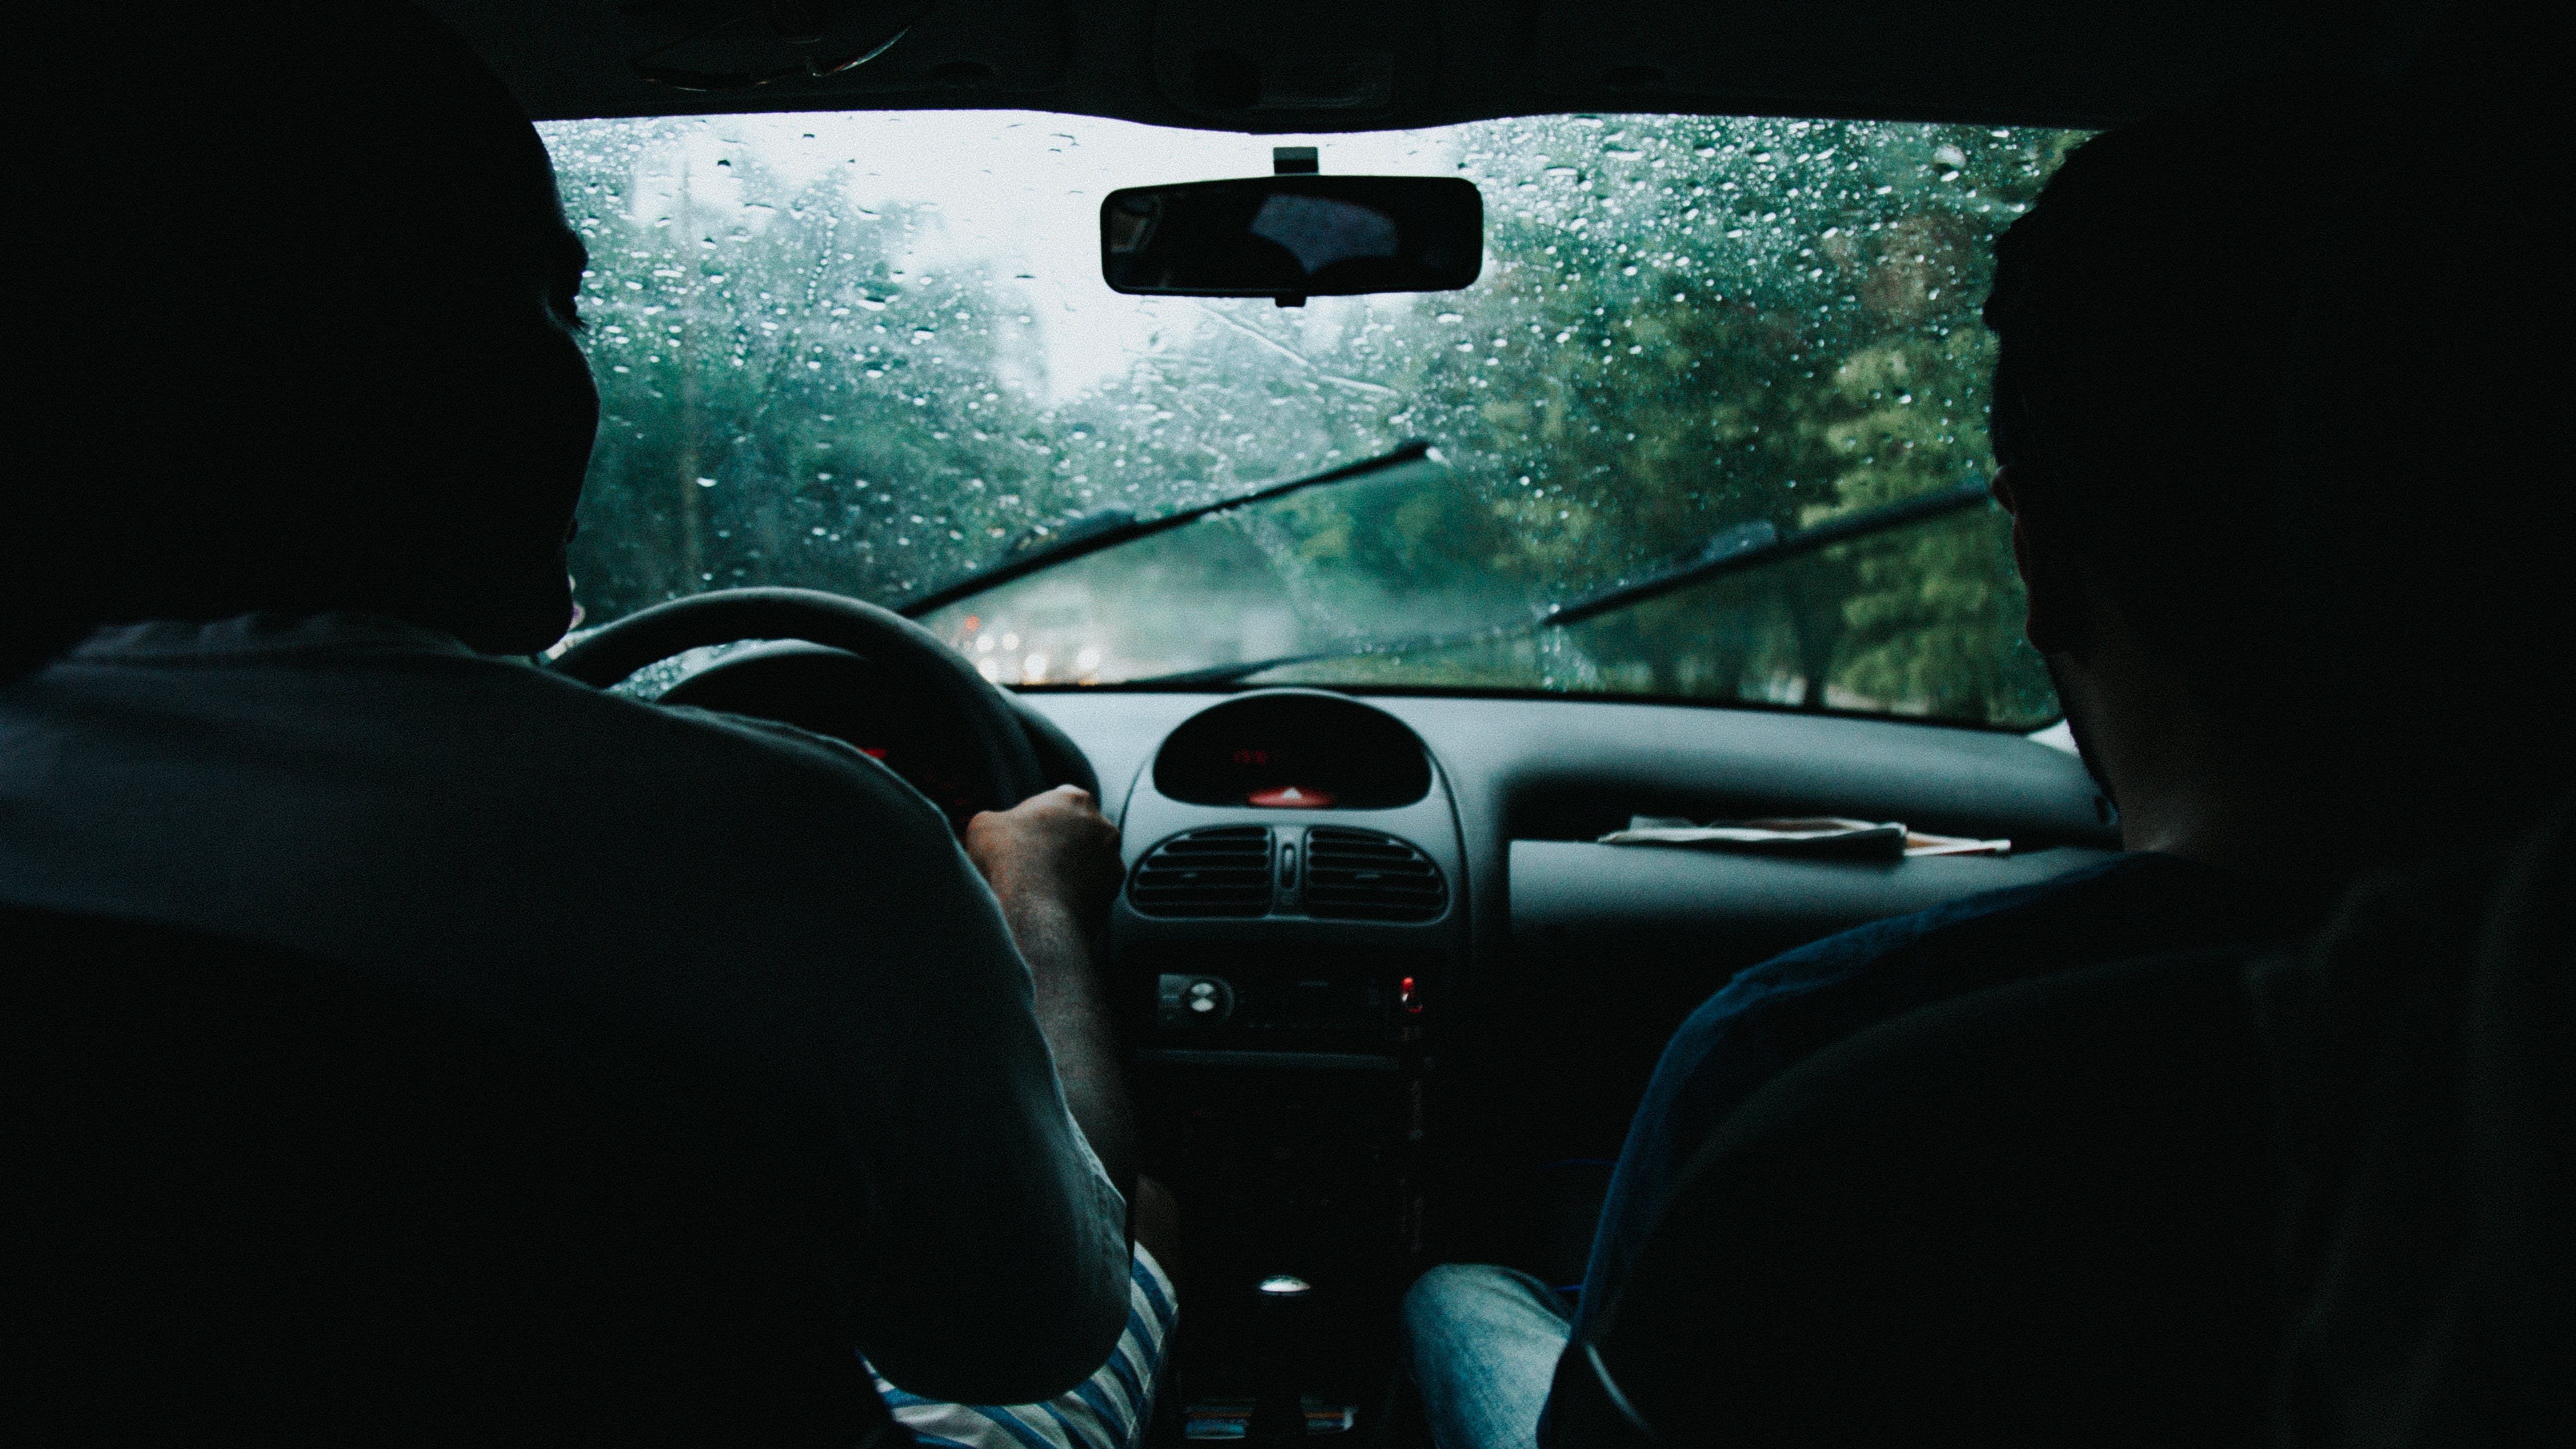 Des gens qui conduisent par mauvais temps | Source : Pexels